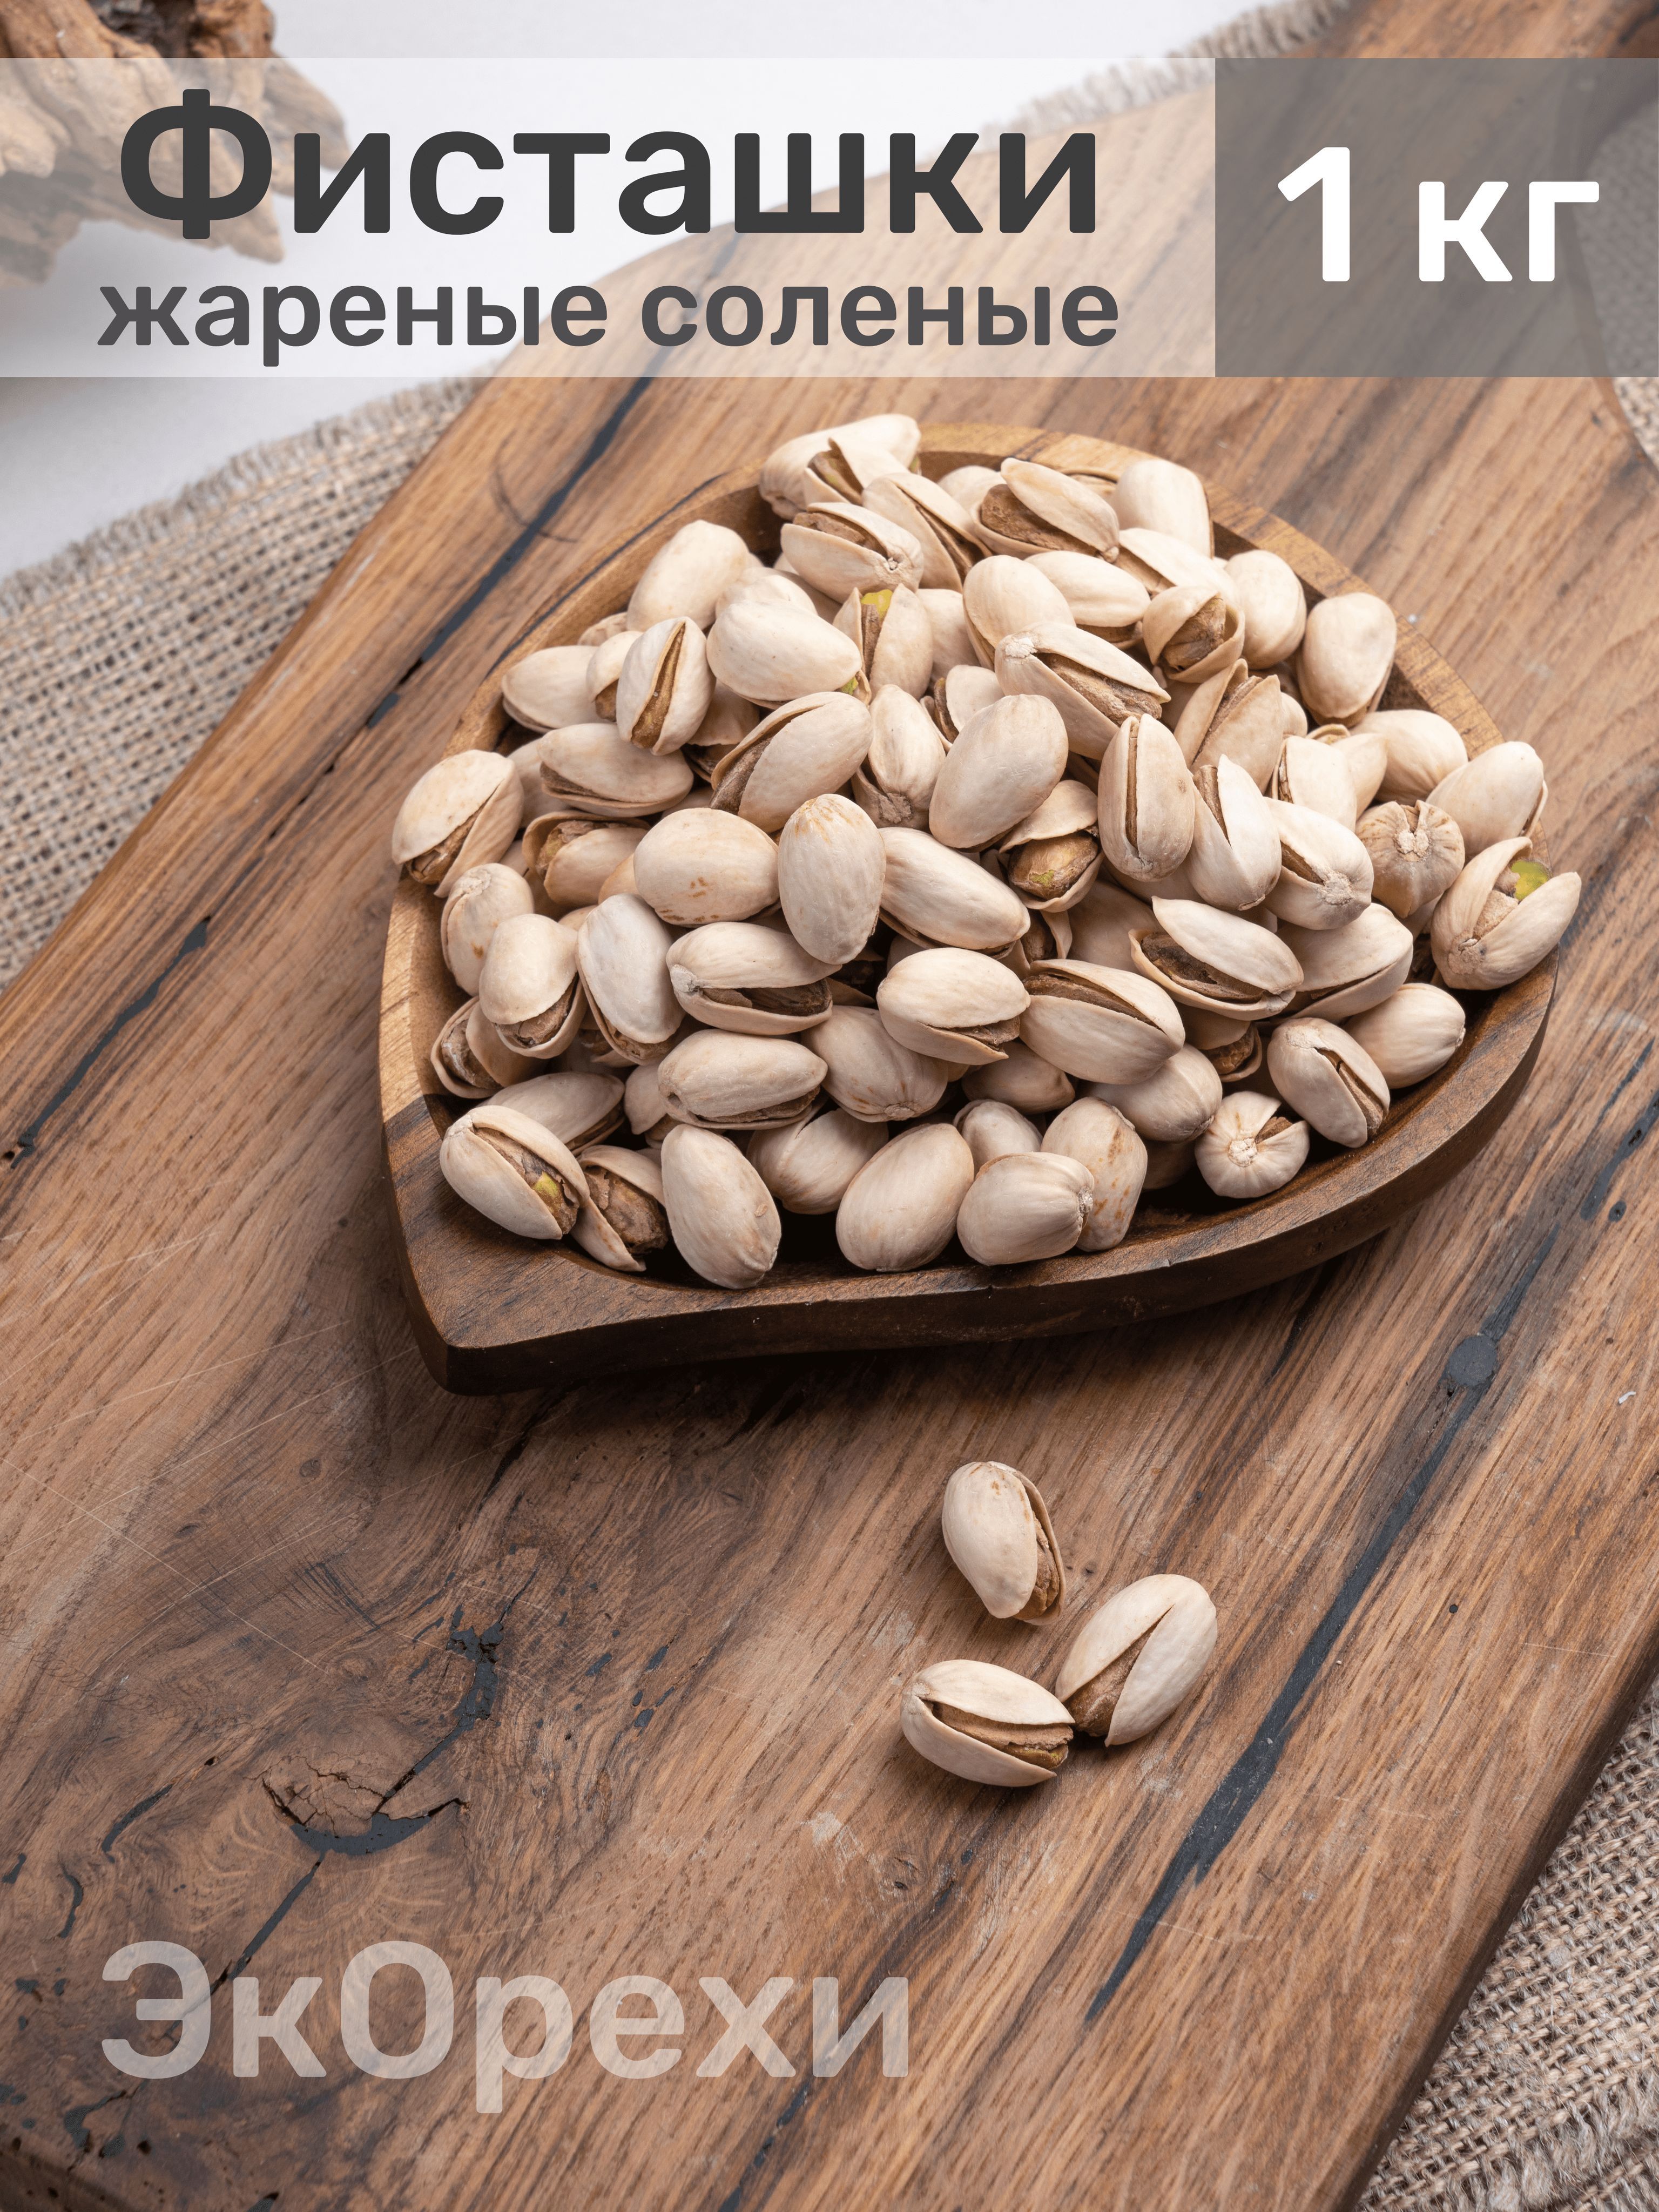 Купить Орехи и сухофрукты в Москве | Магазин фуд-флористики 